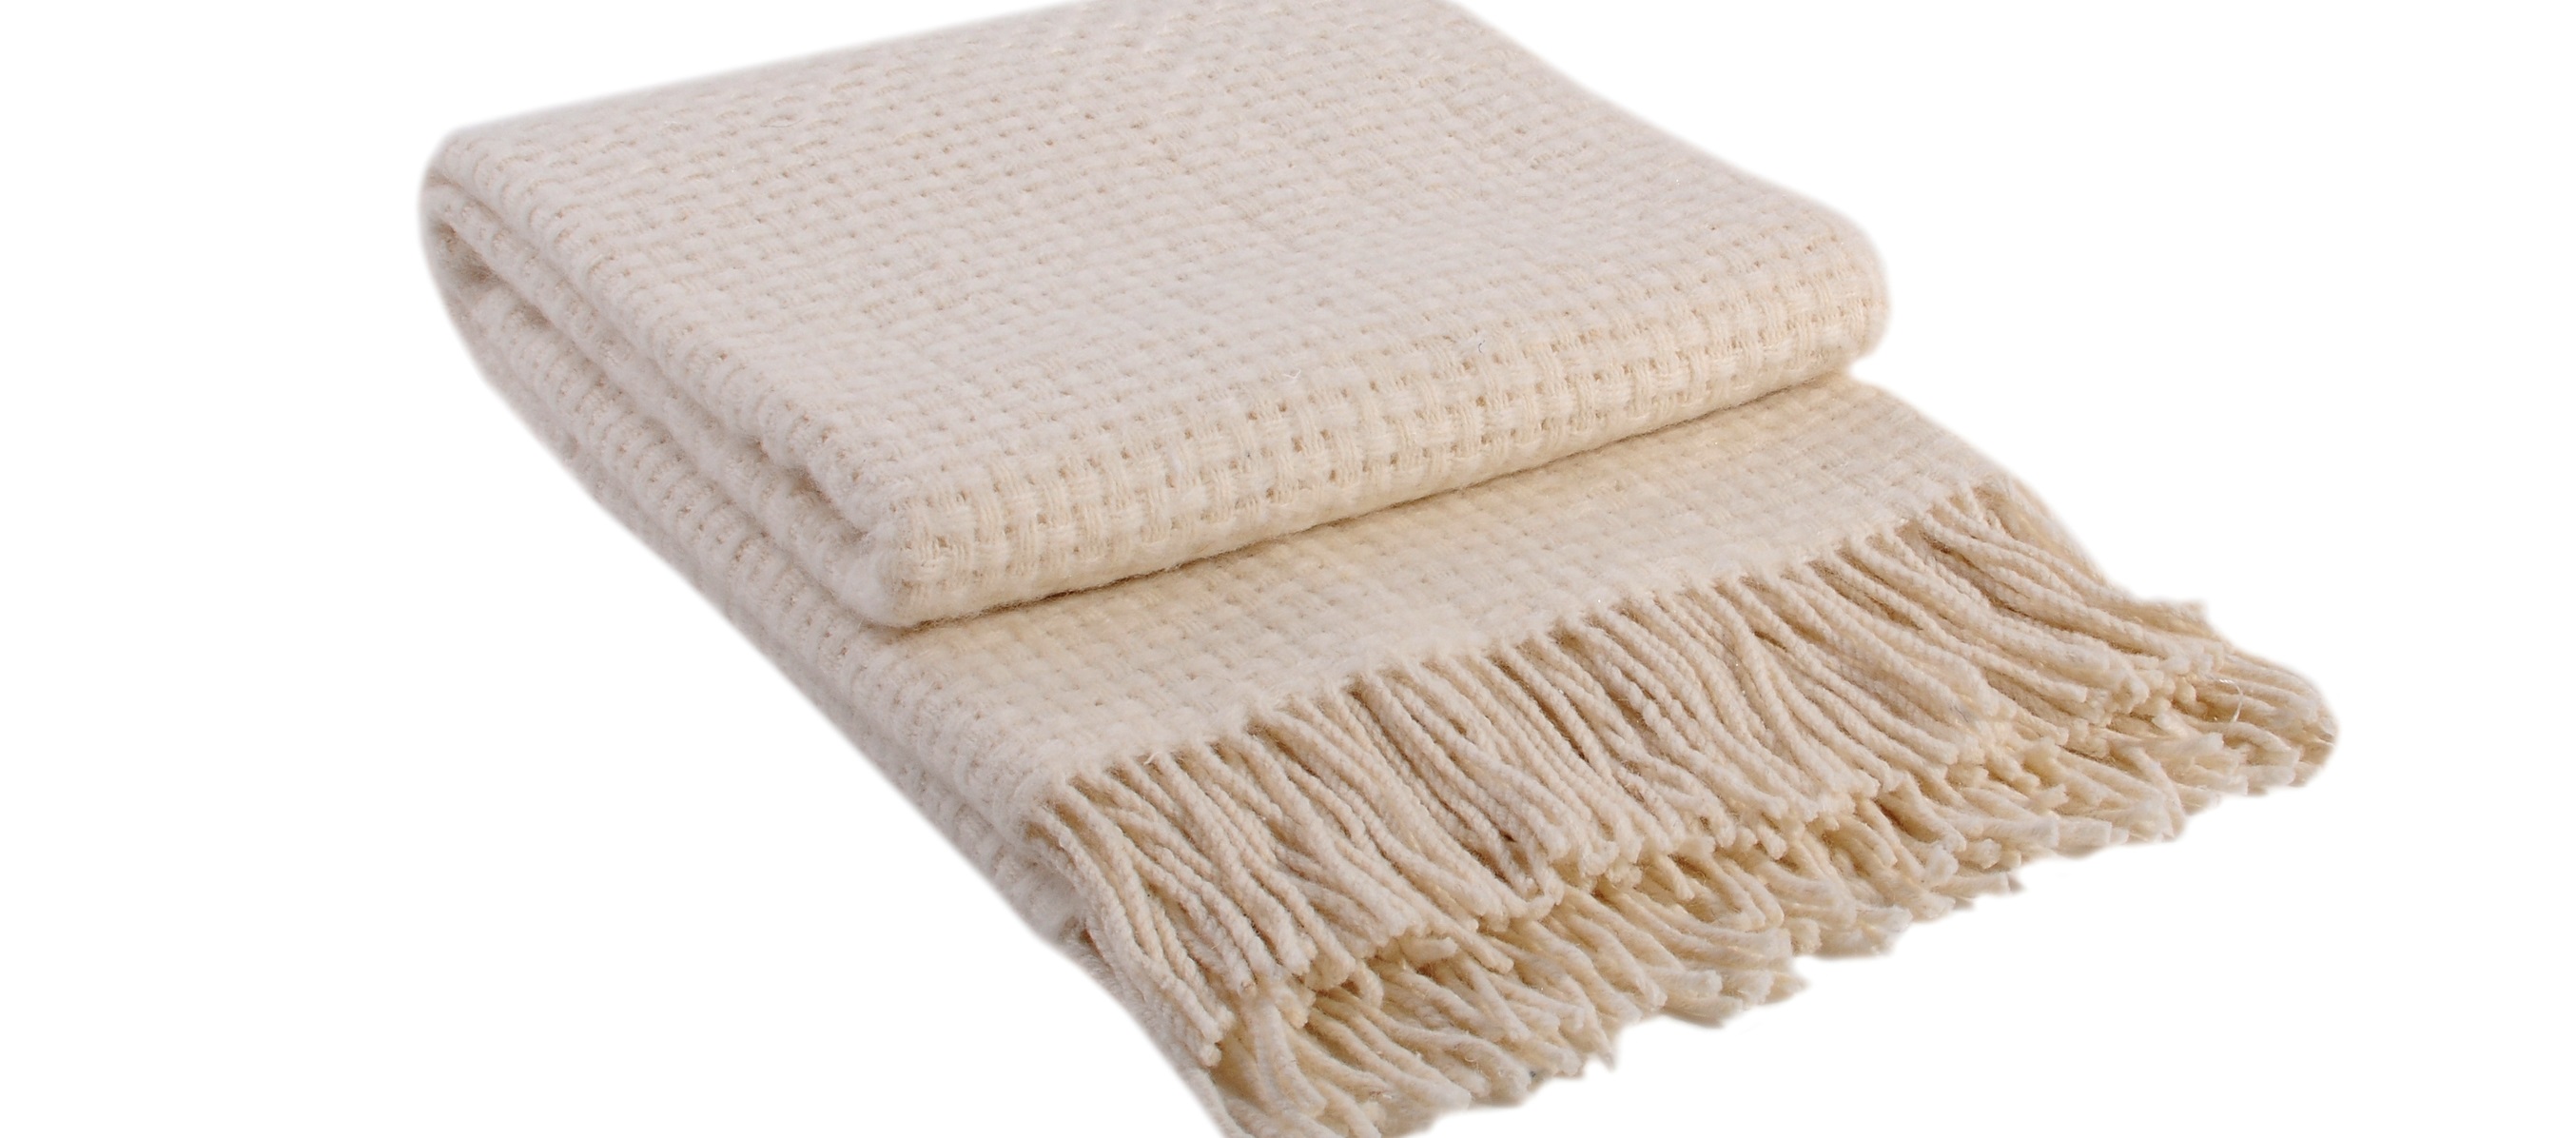 πλύσιμο μιας μάλλινης κουβέρτας